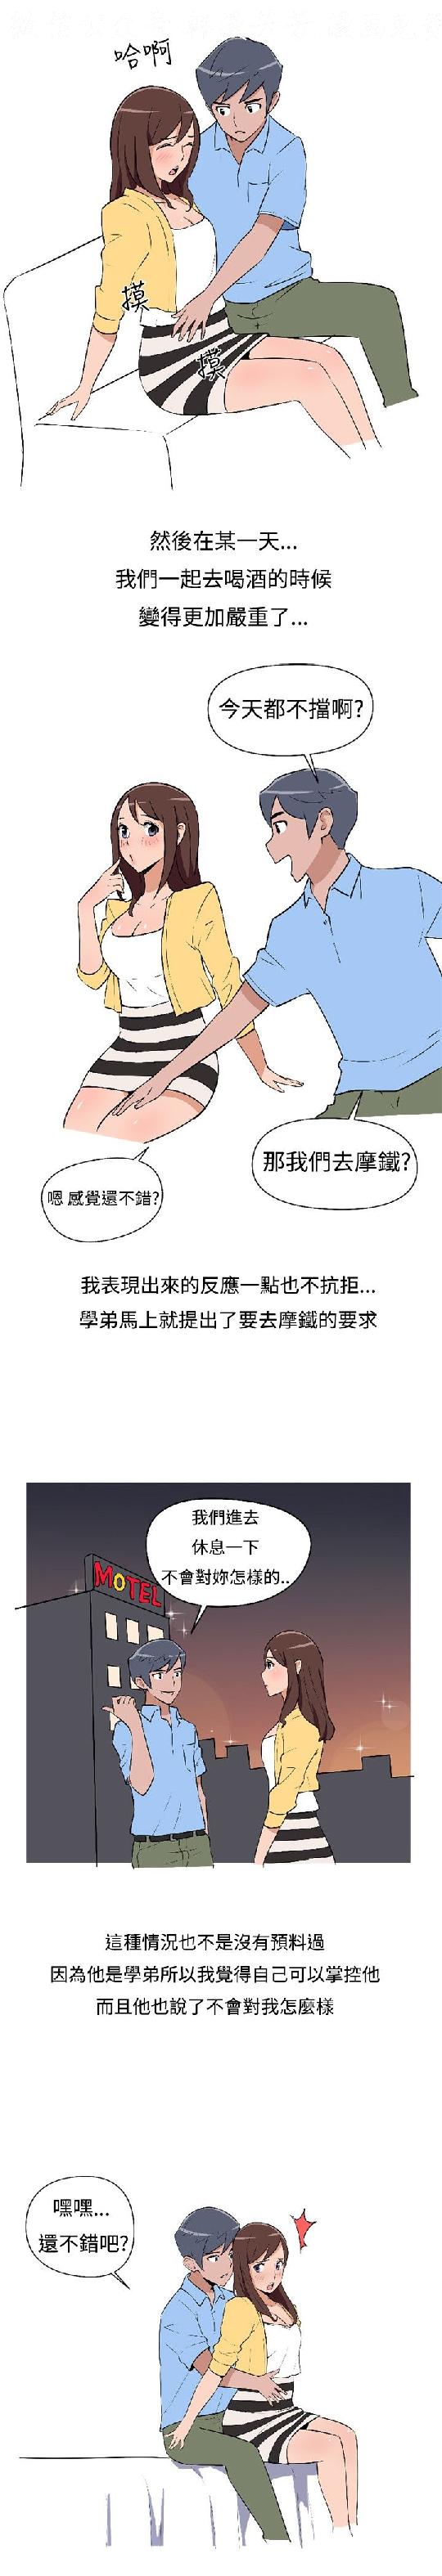 調教女大生【中文】 page 10 full